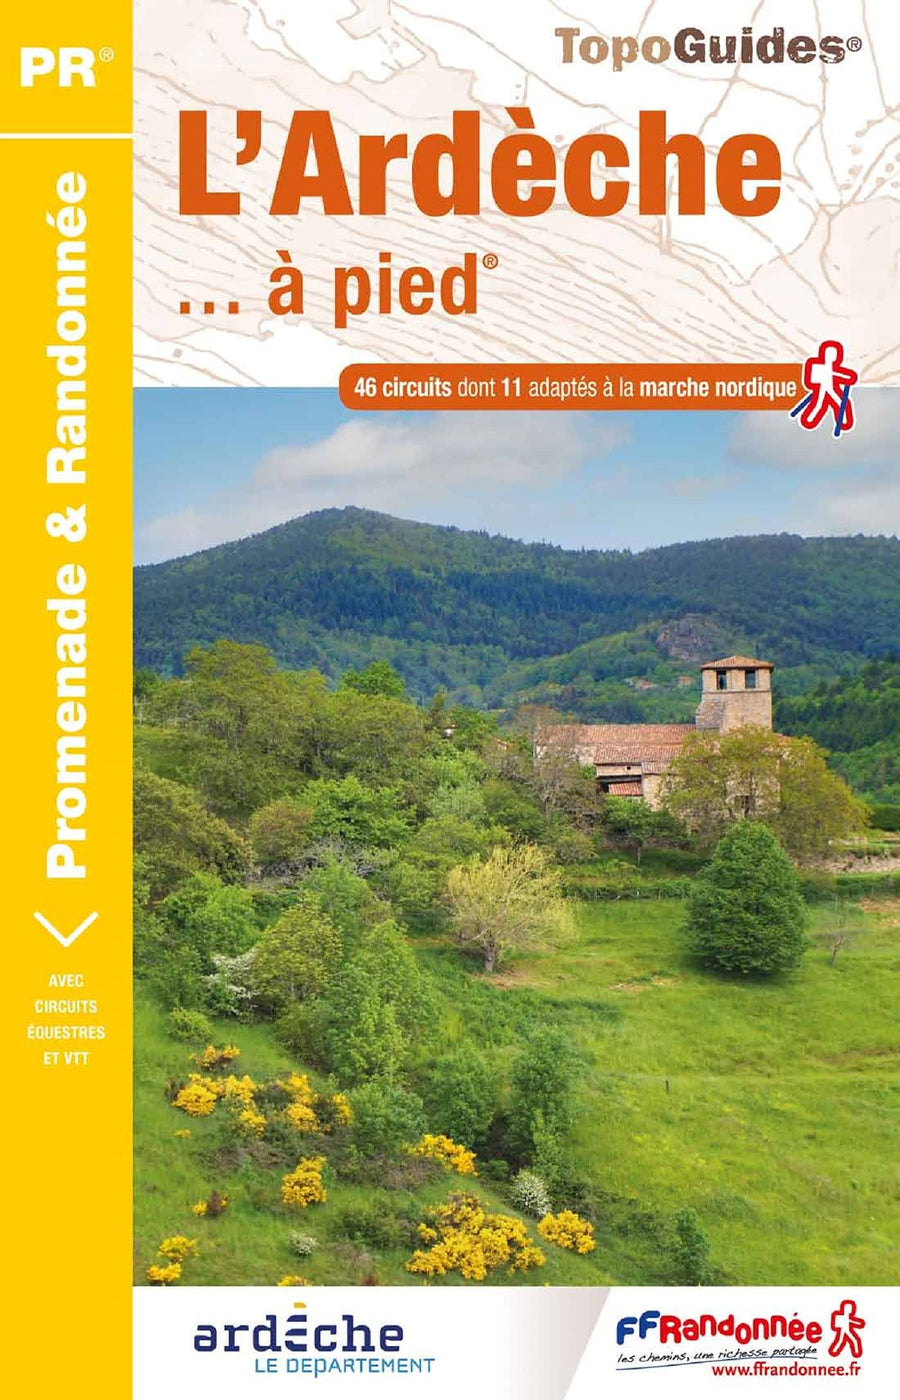 Topoguide de randonnée - L'Ardèche à pied | FFR guide de randonnée FFR - Fédération Française de Randonnée 